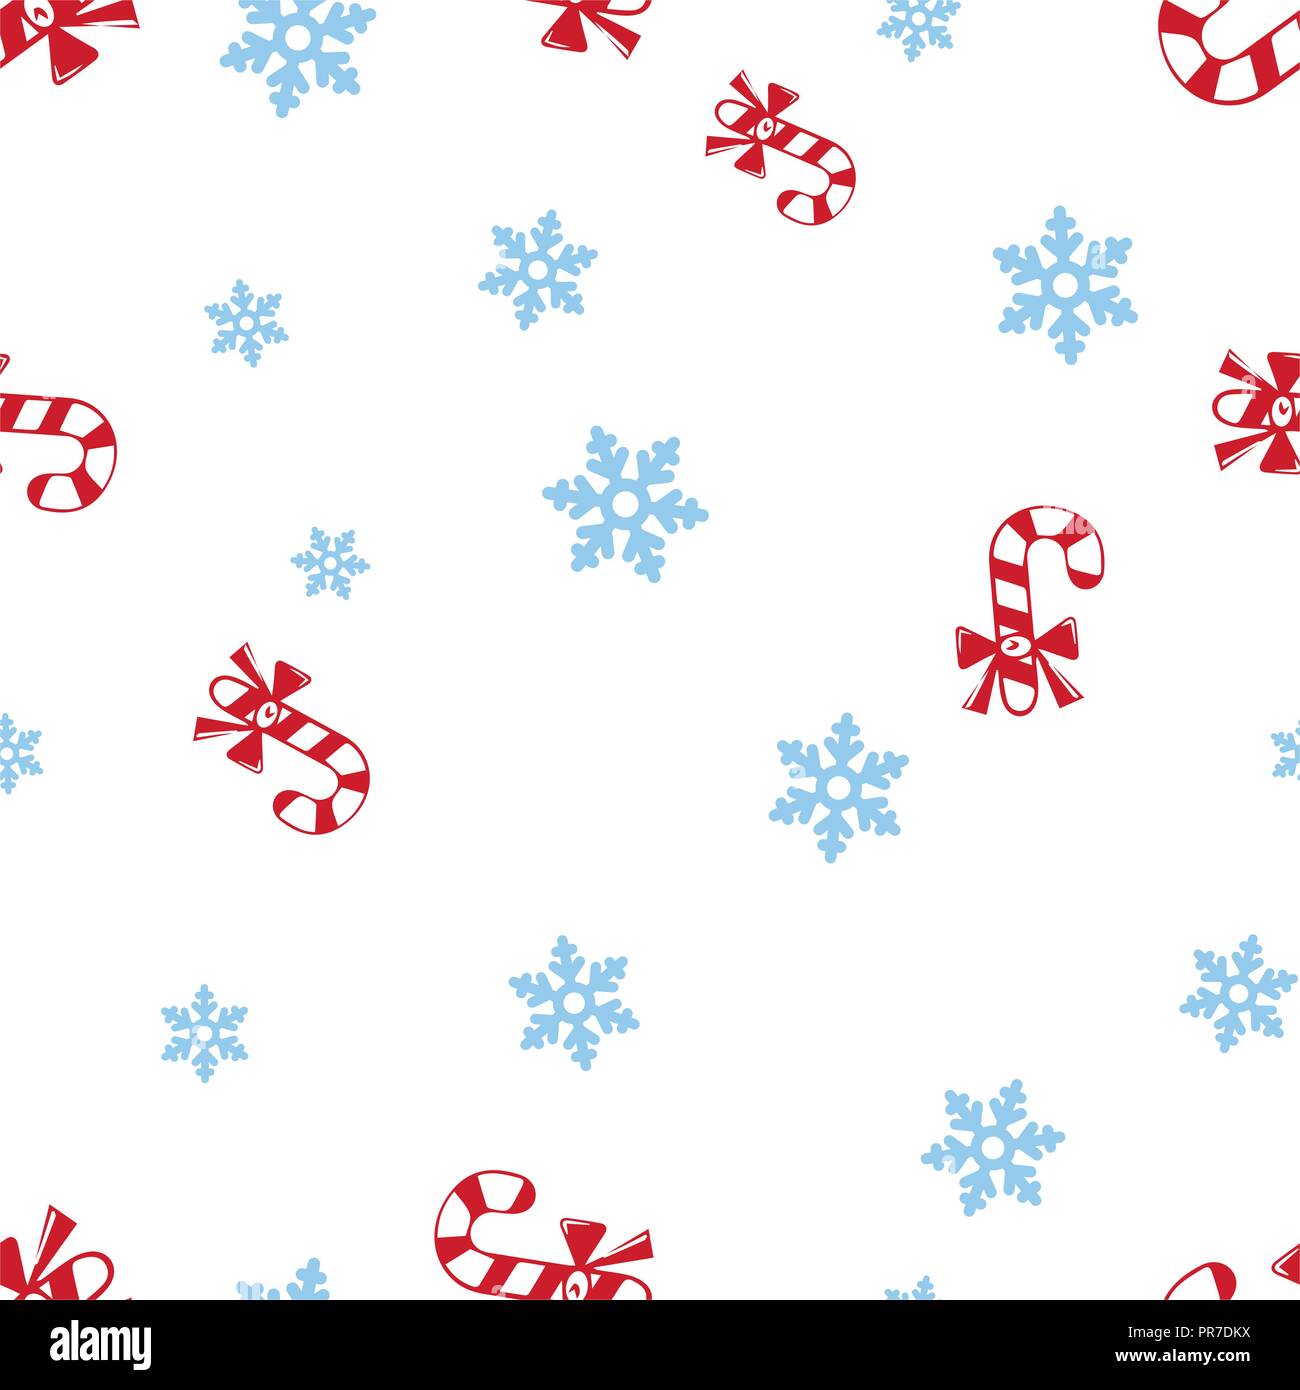 Weihnachten Zuckerstange und Schneeflocke nahtlose Muster. Auf einem weißen Hintergrund. Vector Illustration. Stock Vektor